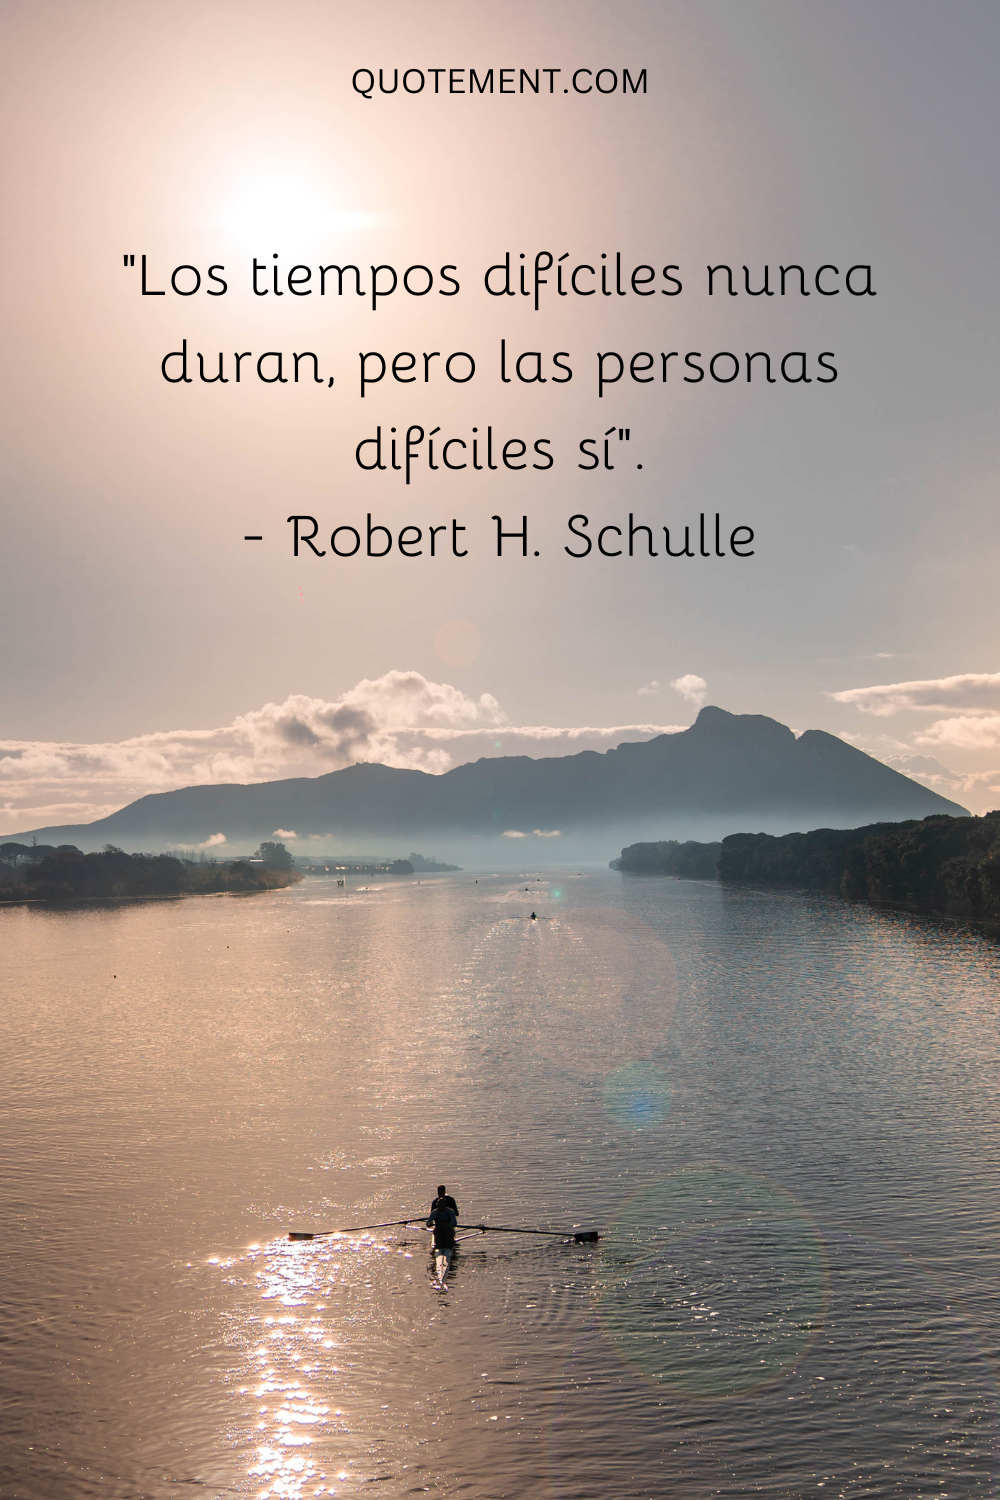 "Los tiempos difíciles nunca duran, pero las personas difíciles sí". - Robert H. Schulle